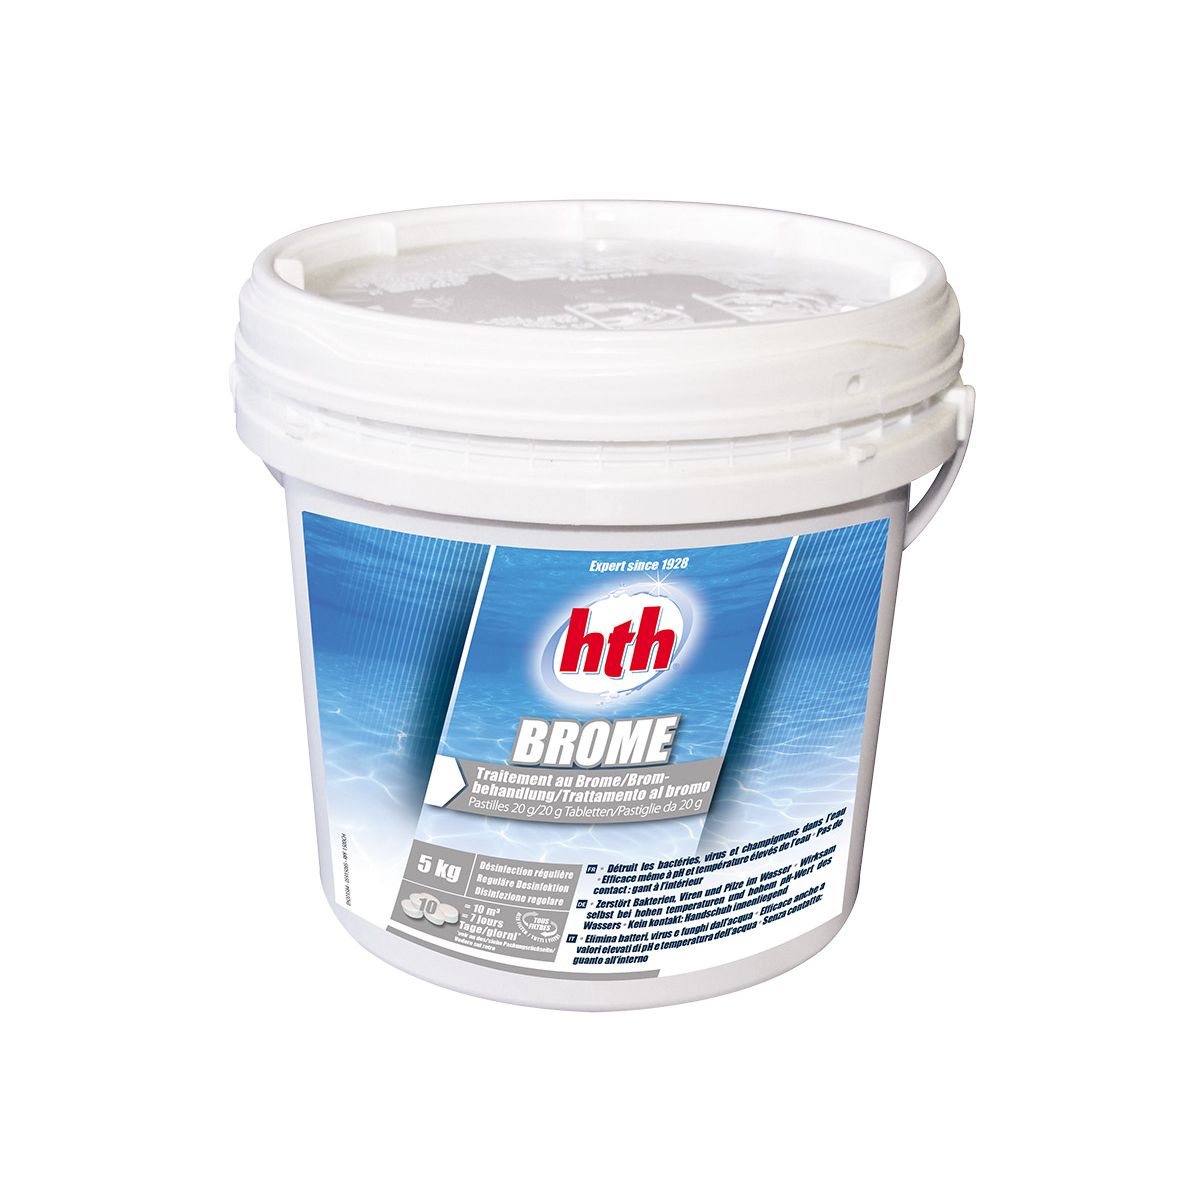 HTH Brome 5 kg - HTH